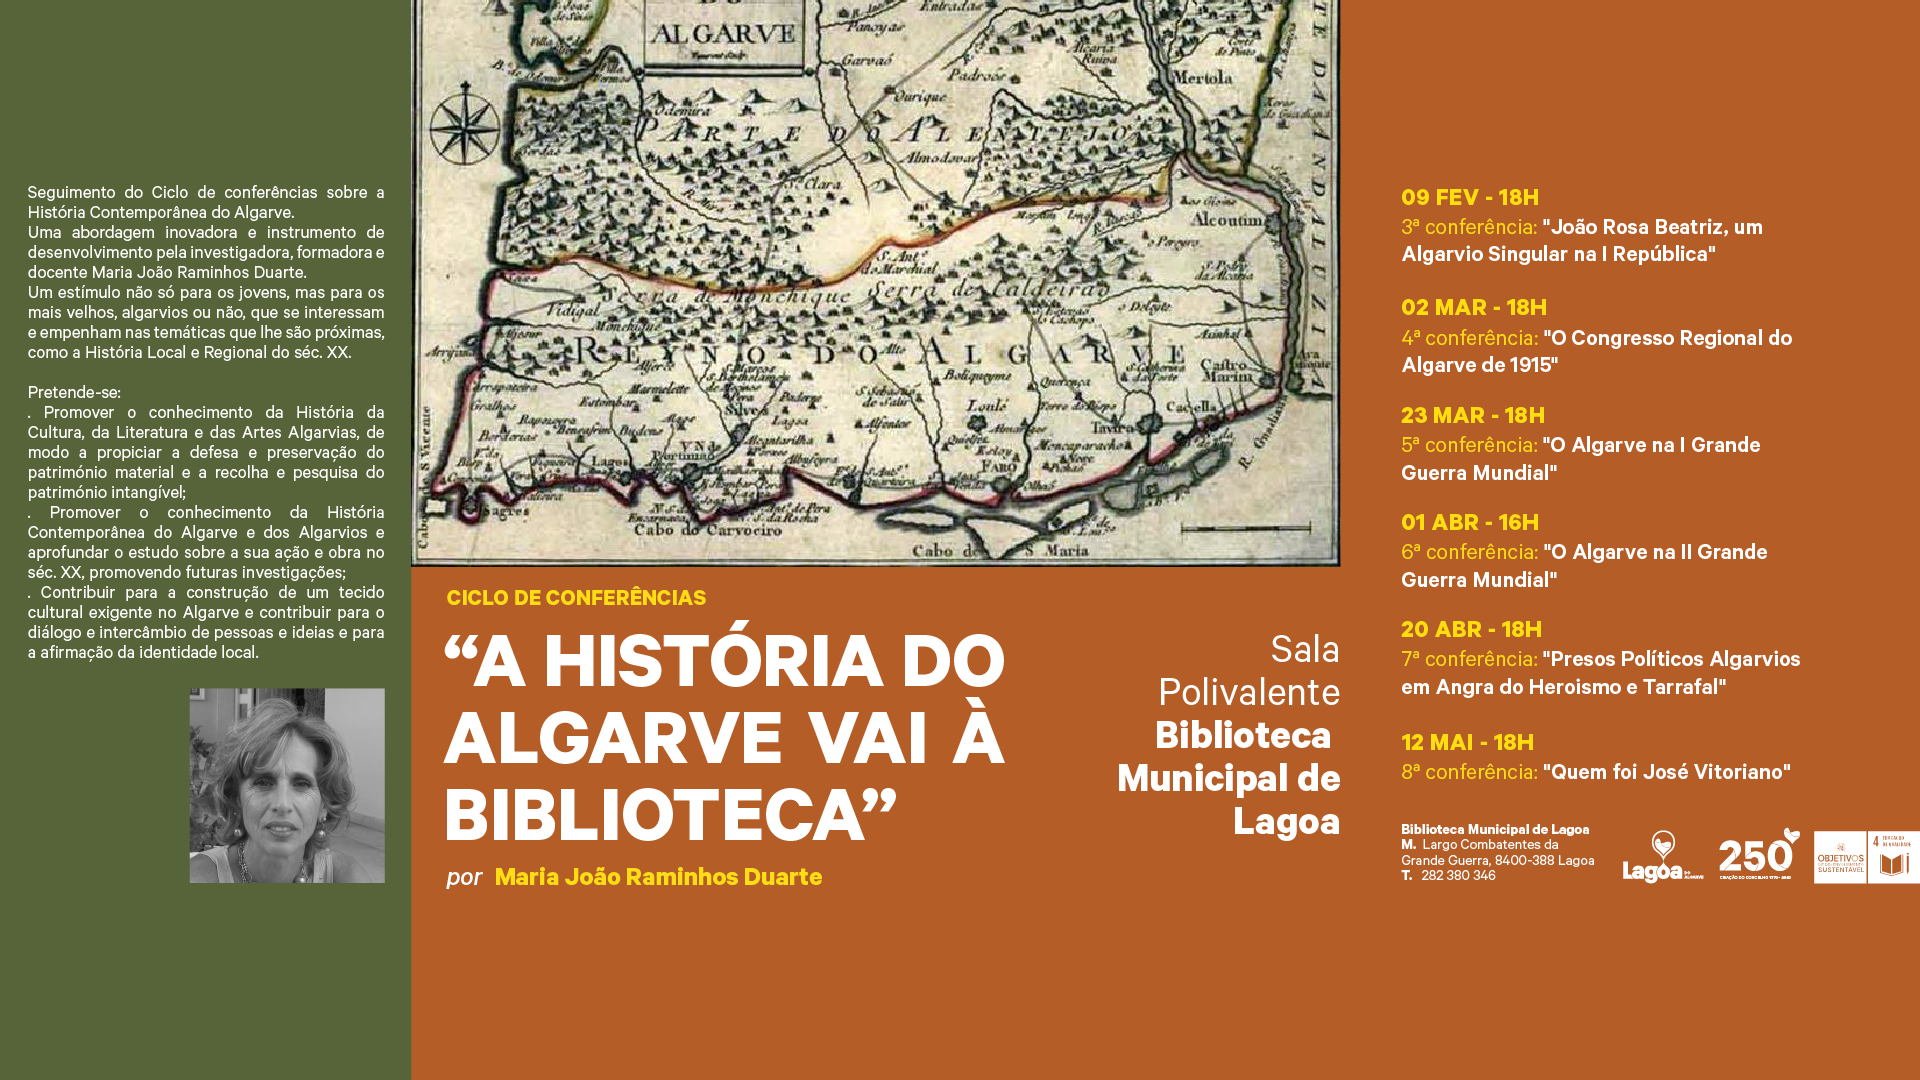 Ciclo de Conferências "A História do Algarve"